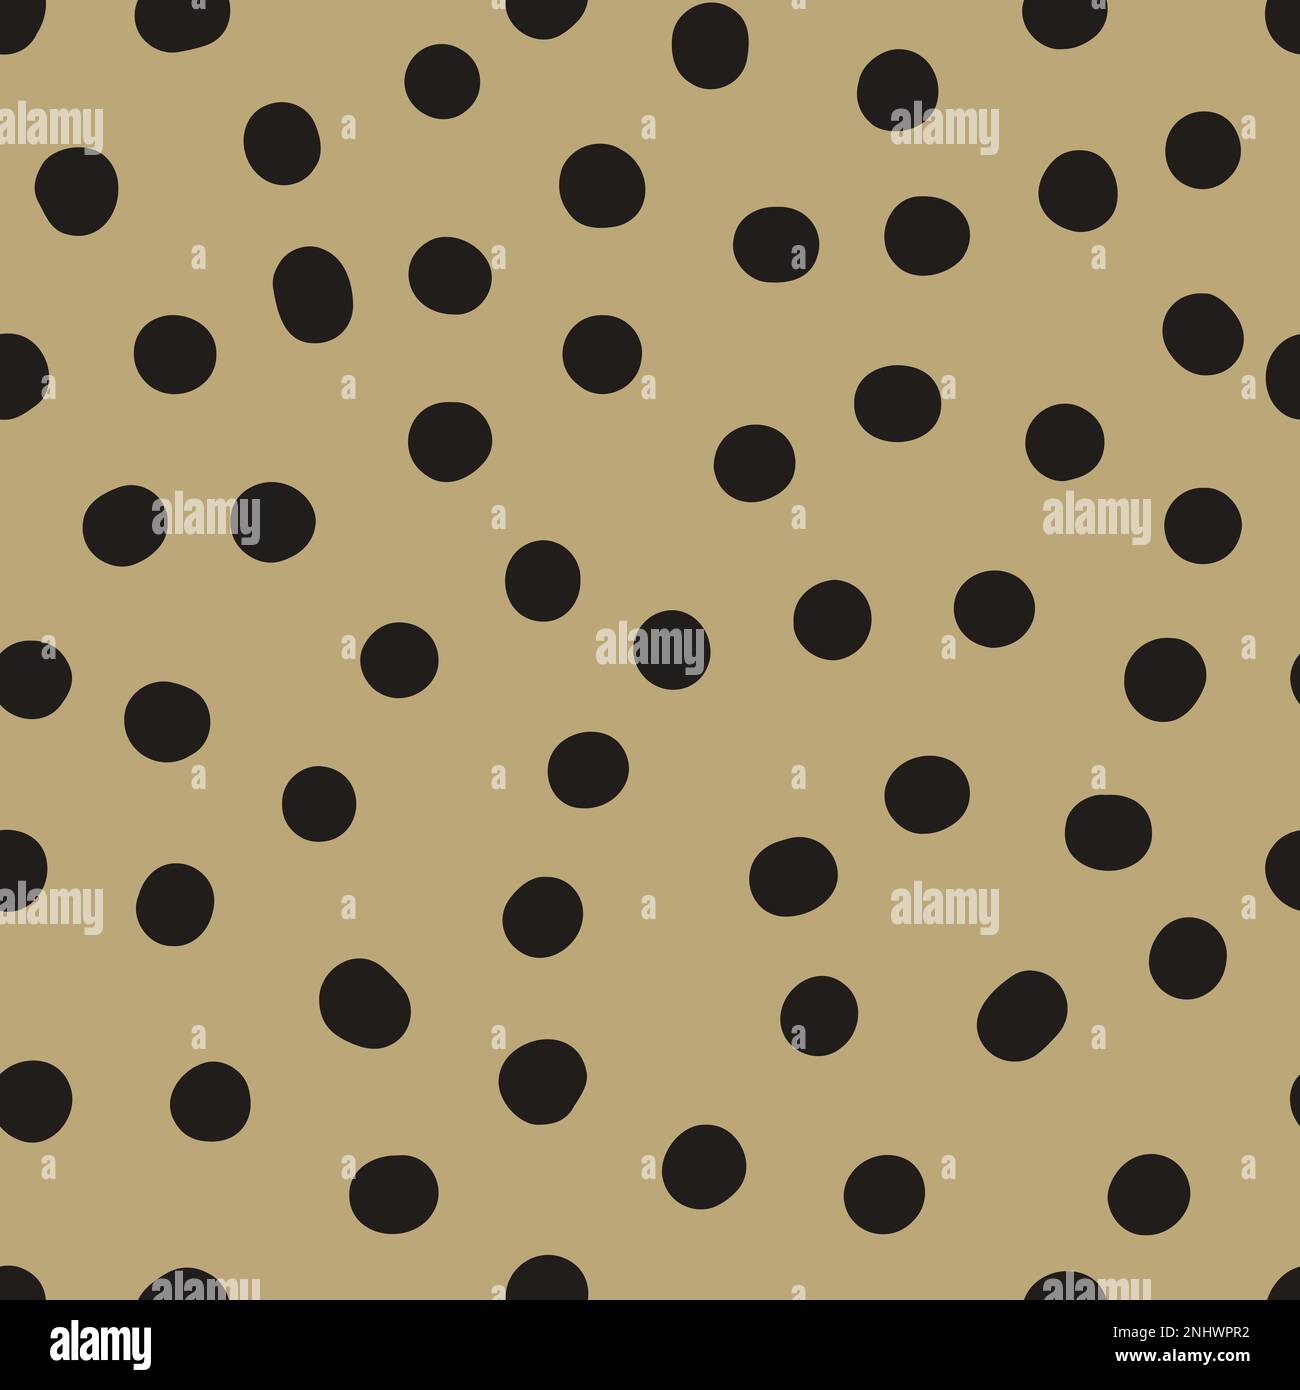 Nahtloses neutrales Punktmuster. Schwarze, handgezeichnete Kreise auf beigefarbenem Hintergrund. Abstraktes Zierstück mit zufälligen Punkten. Vektor-Halbtondarstellung für w Stock Vektor